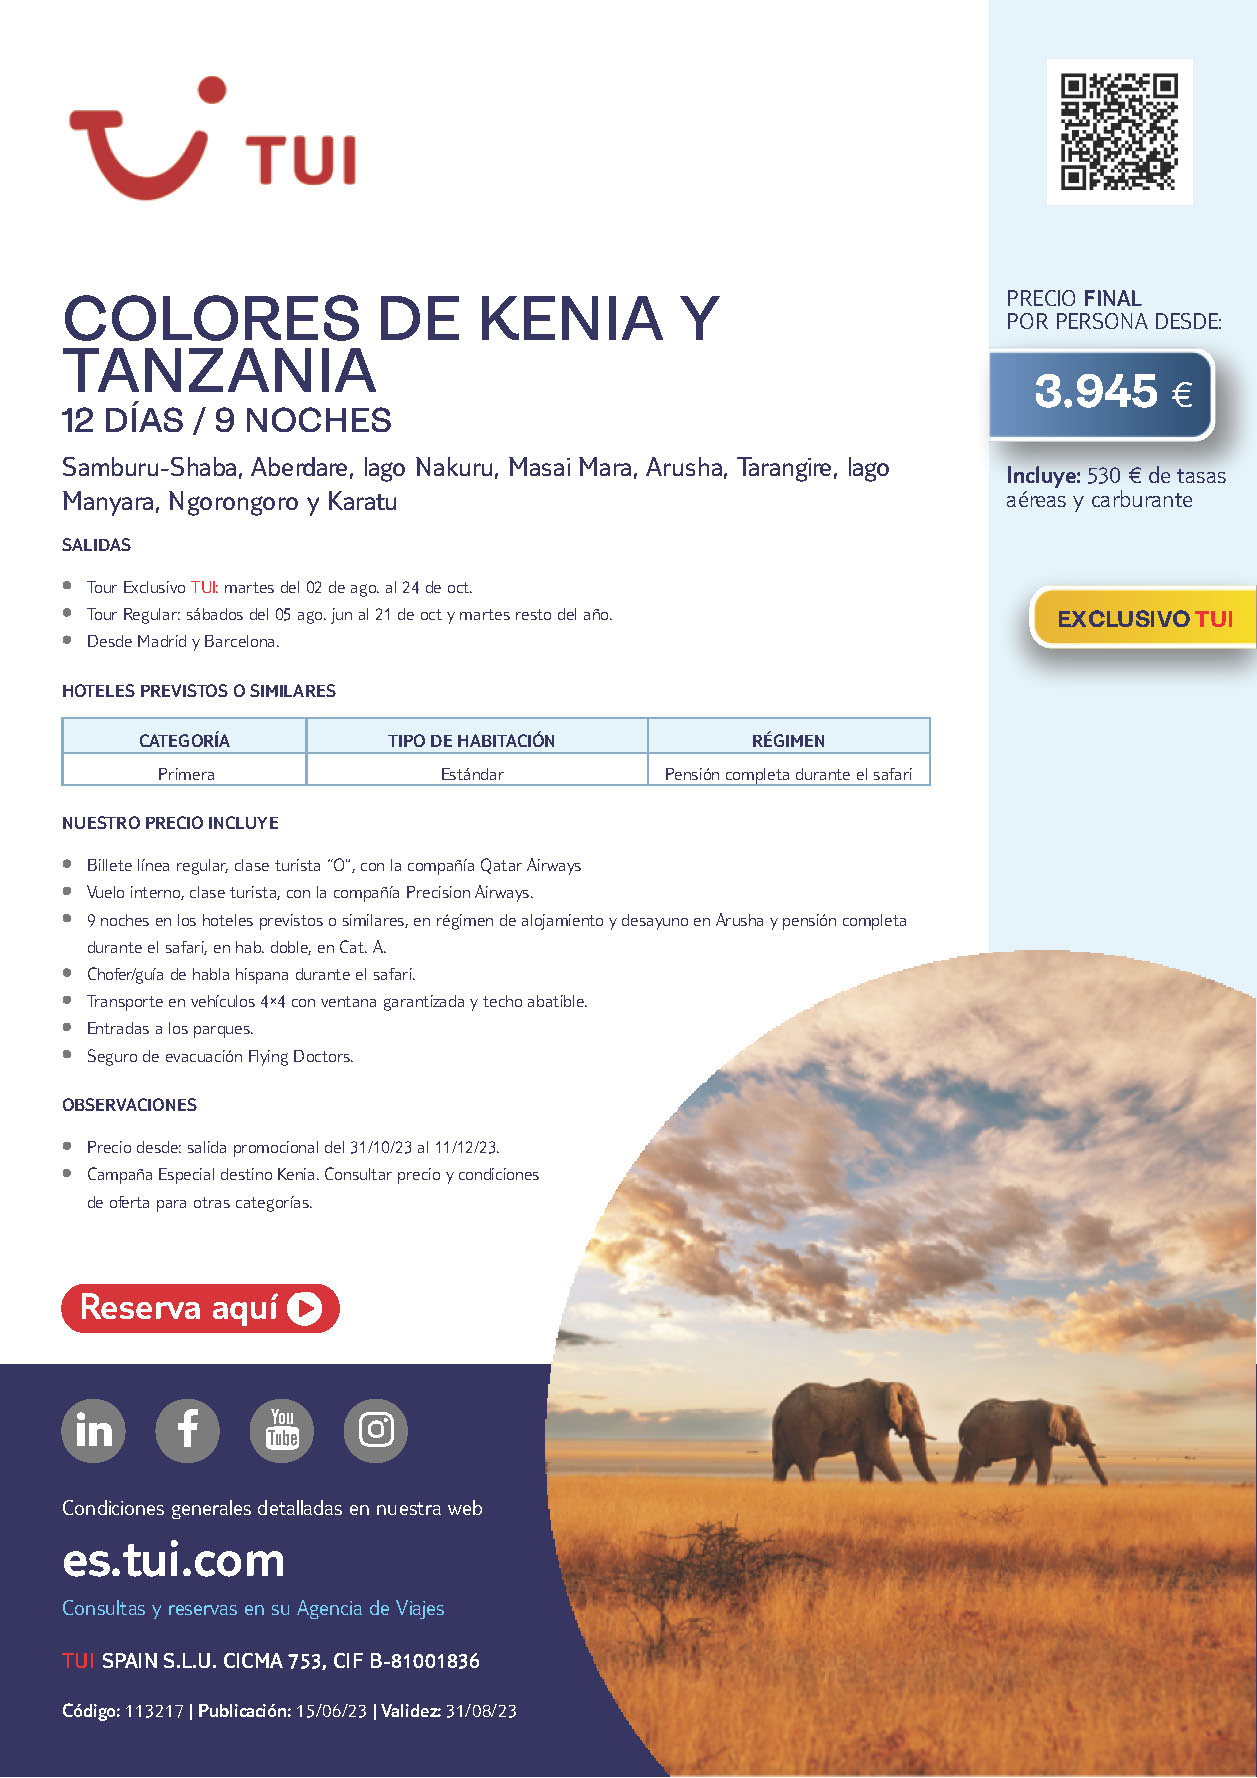 Oferta TUI Colores de Kenia y Tanzania 12 dias Septiembre Octubre 2023 salidas desde Barcelona y Madrid vuelos Qatar Airways